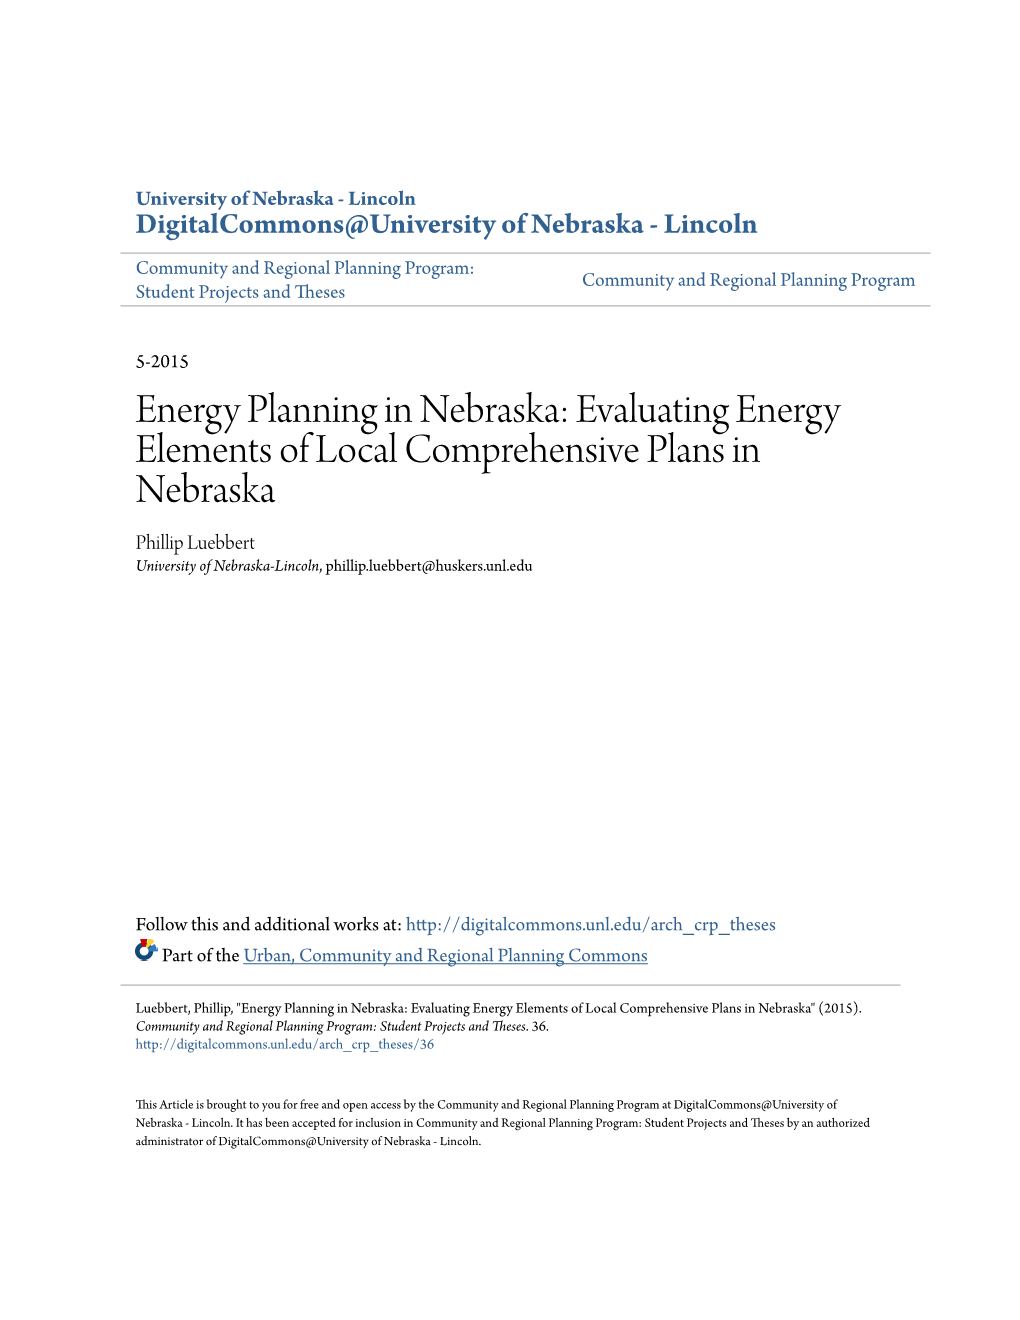 Energy Planning in Nebraska